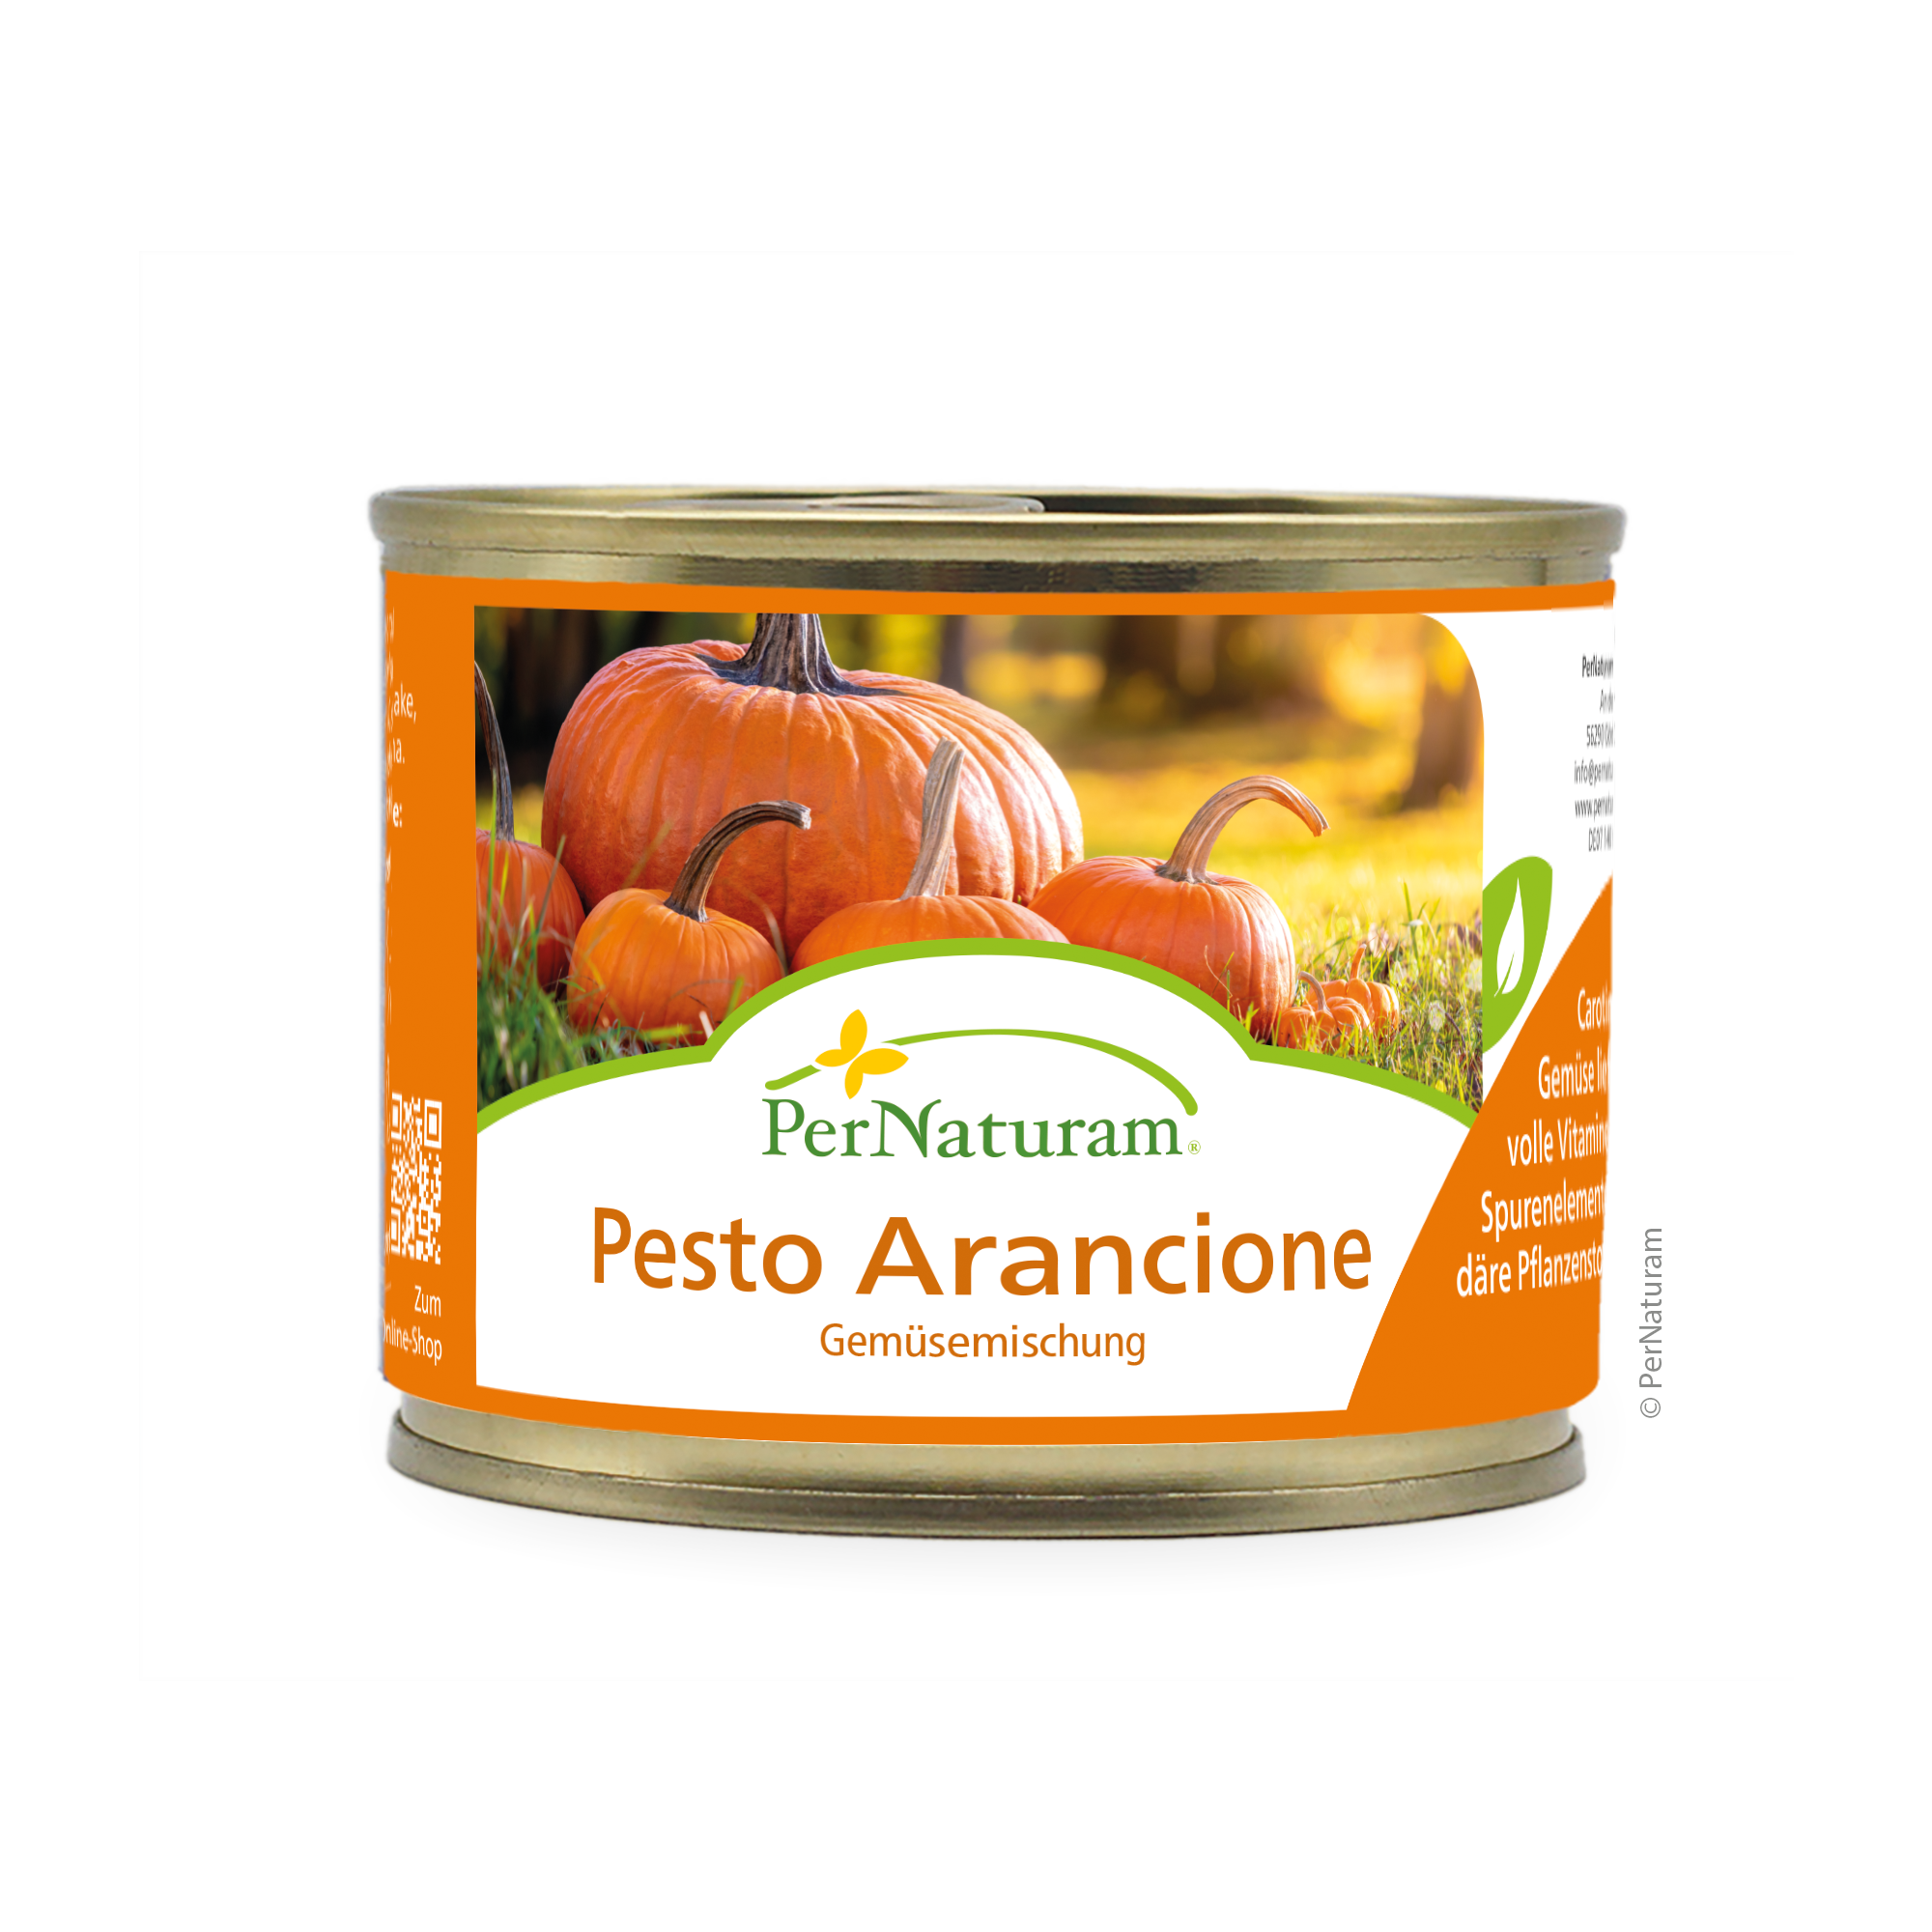 PerNaturam® Pesto Arancione